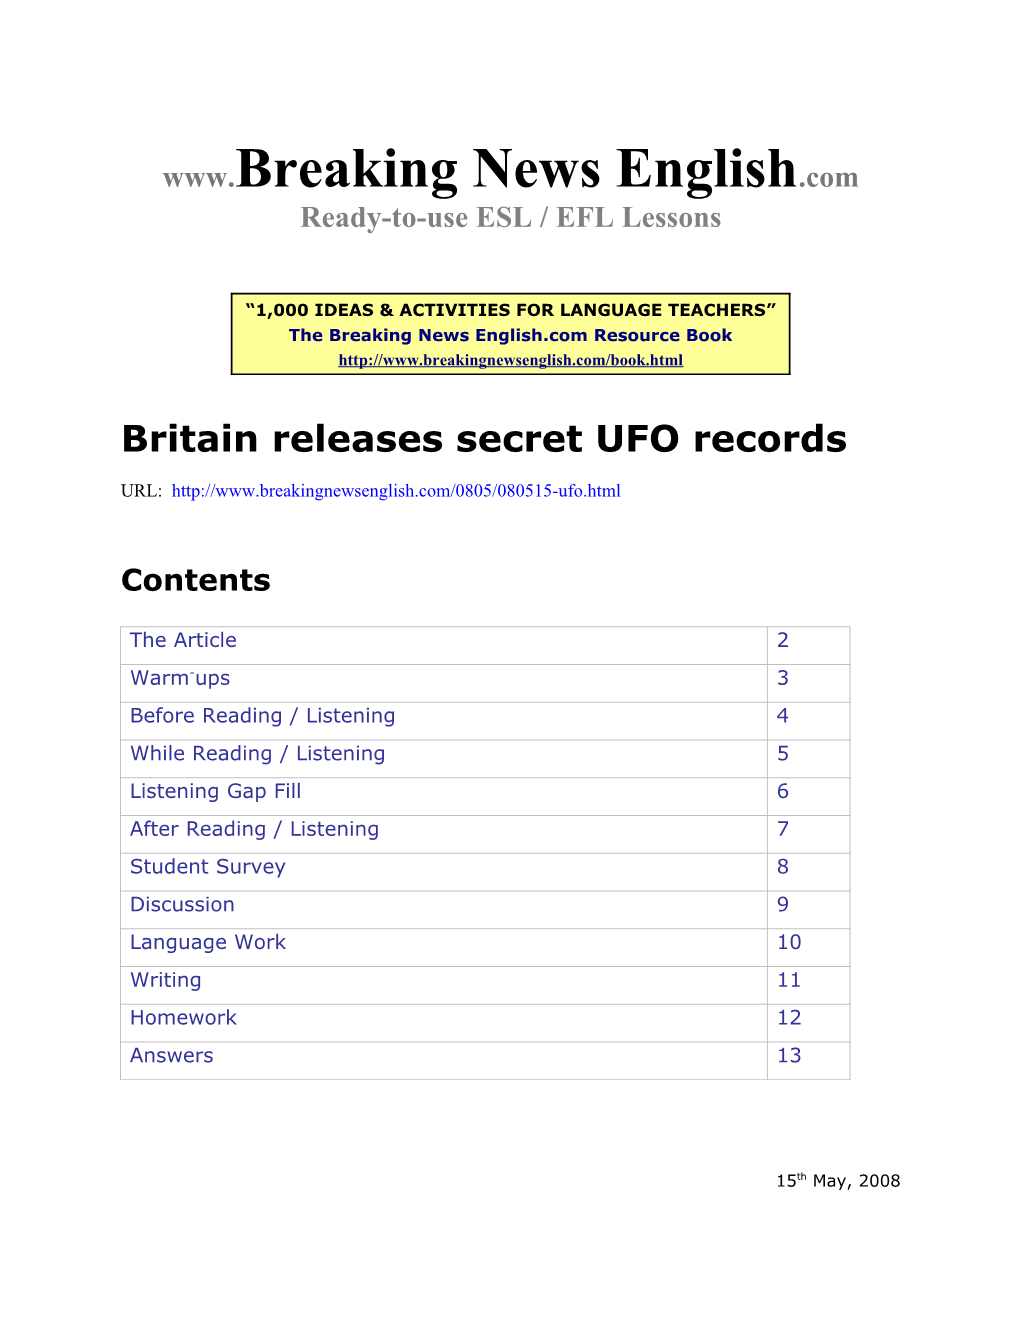 Britain Releases Secret UFO Records